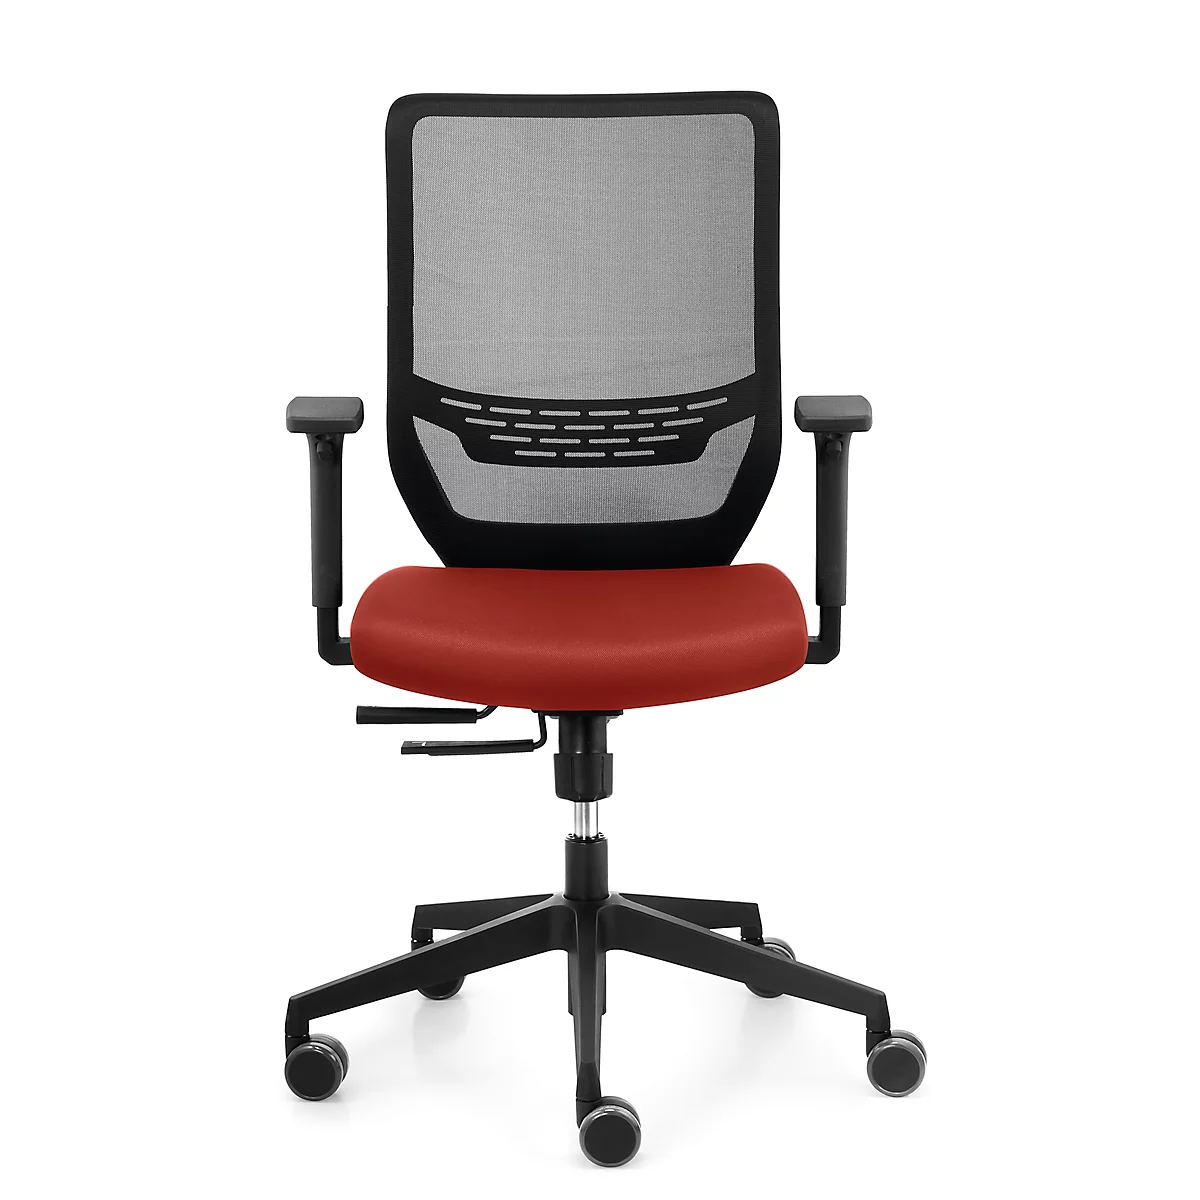 Funda para silla, para silla de oficina to-sync work, An 400 mm, reequipable, rojo rubí